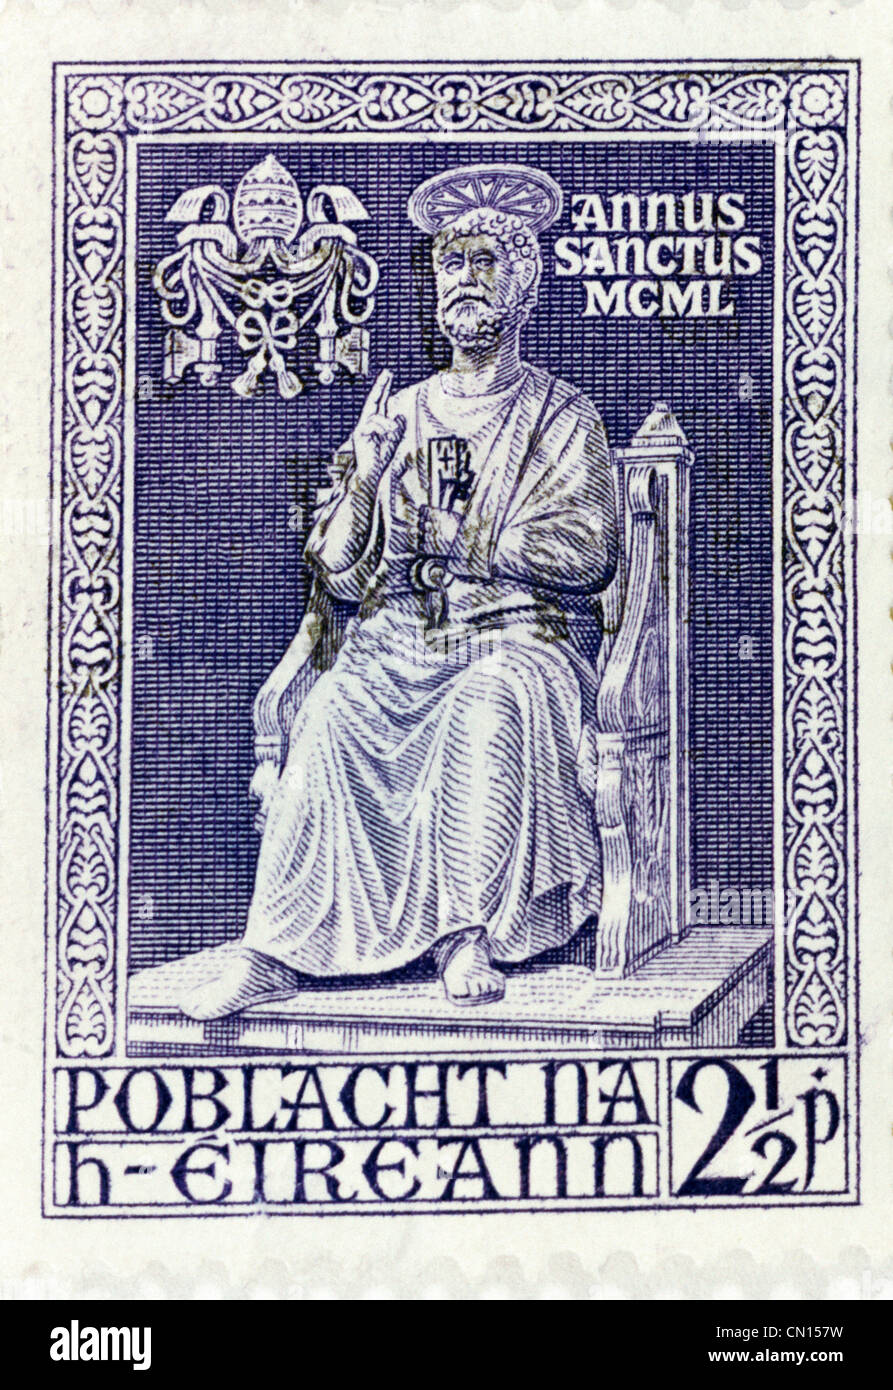 Republik Irland Stempel 1950 benannt Heiliges Jahr durch den Vatikan Bild von der Bronze-Statue von St. Peter im Vatikan Stockfoto